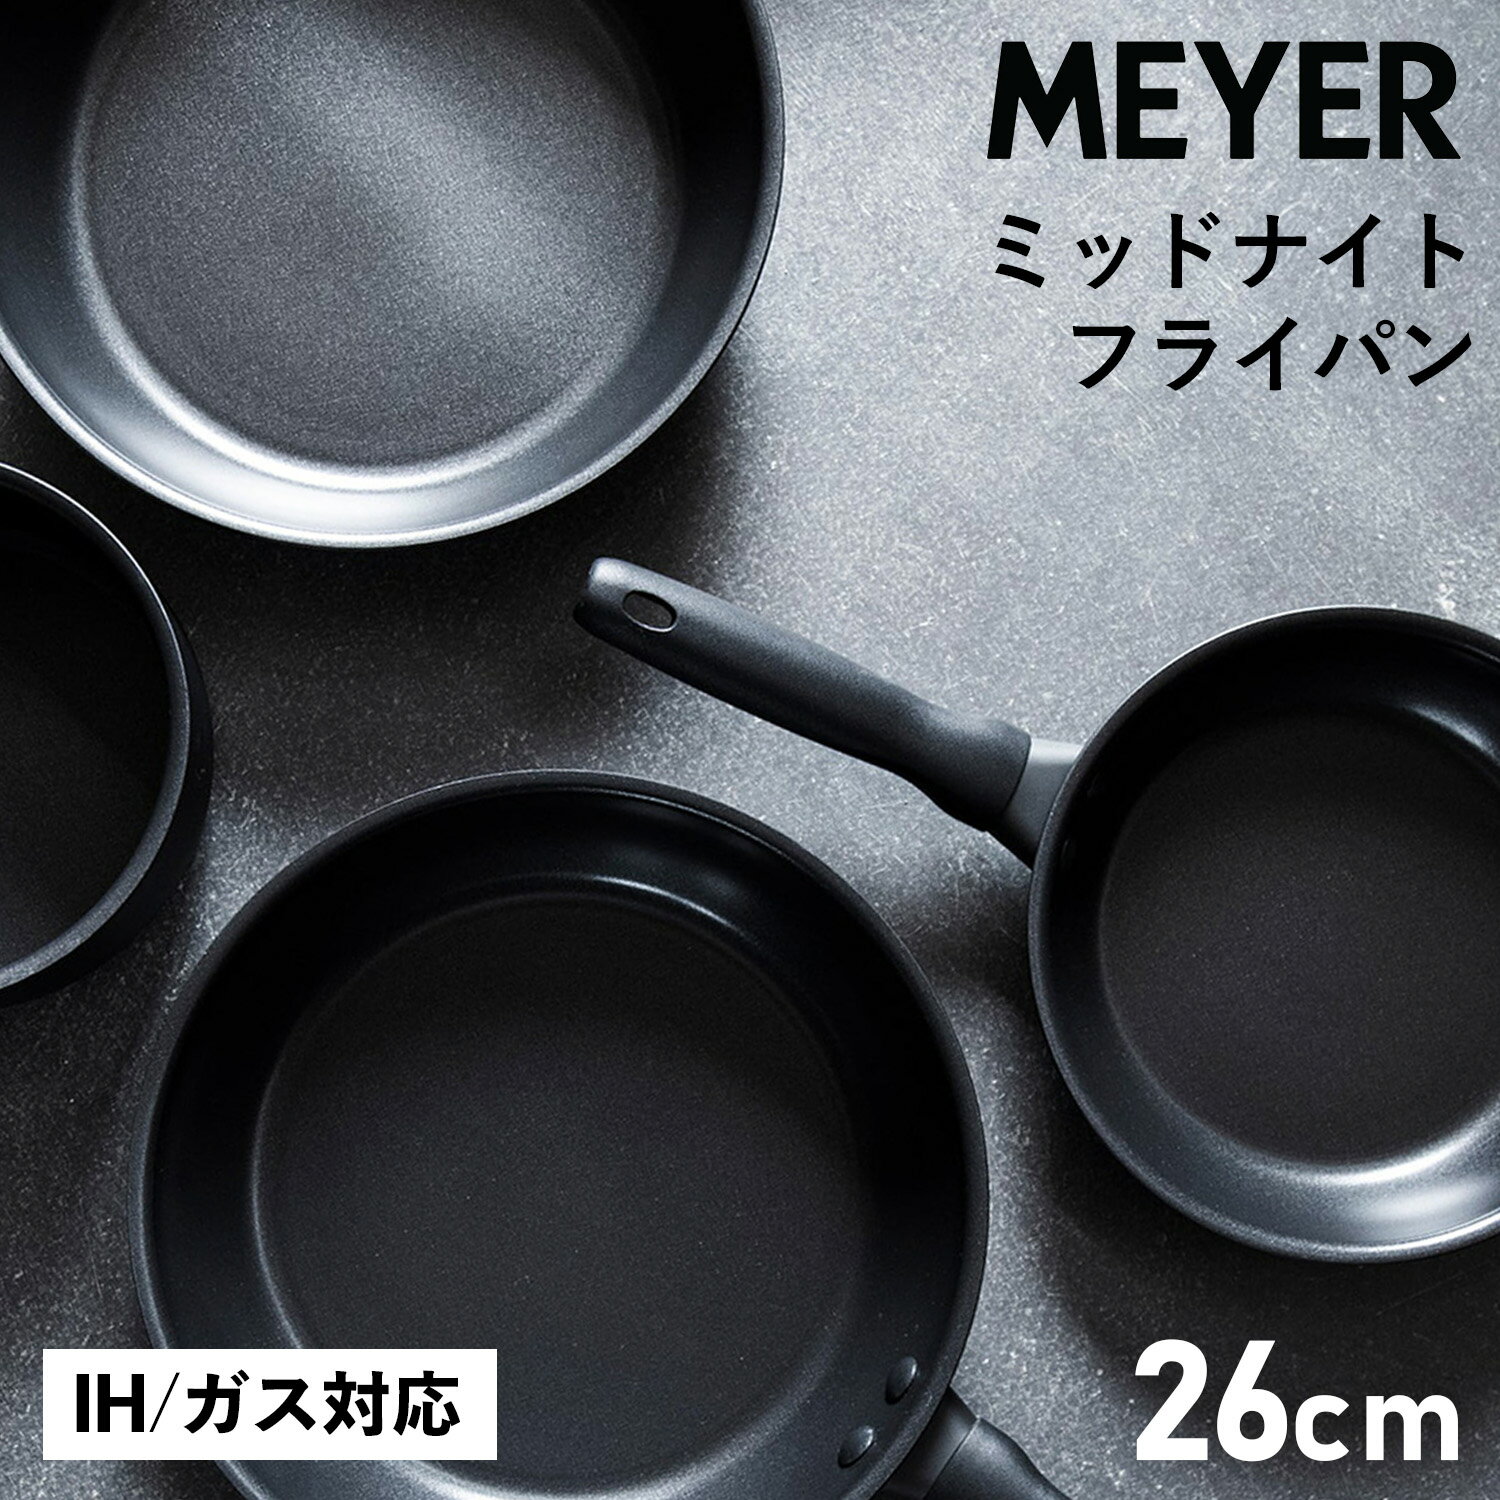 MEYER マイヤー フライパン 26cm ミッドナイト IH ガス対応 MIDNIGHT FRY PAN MNH-P26